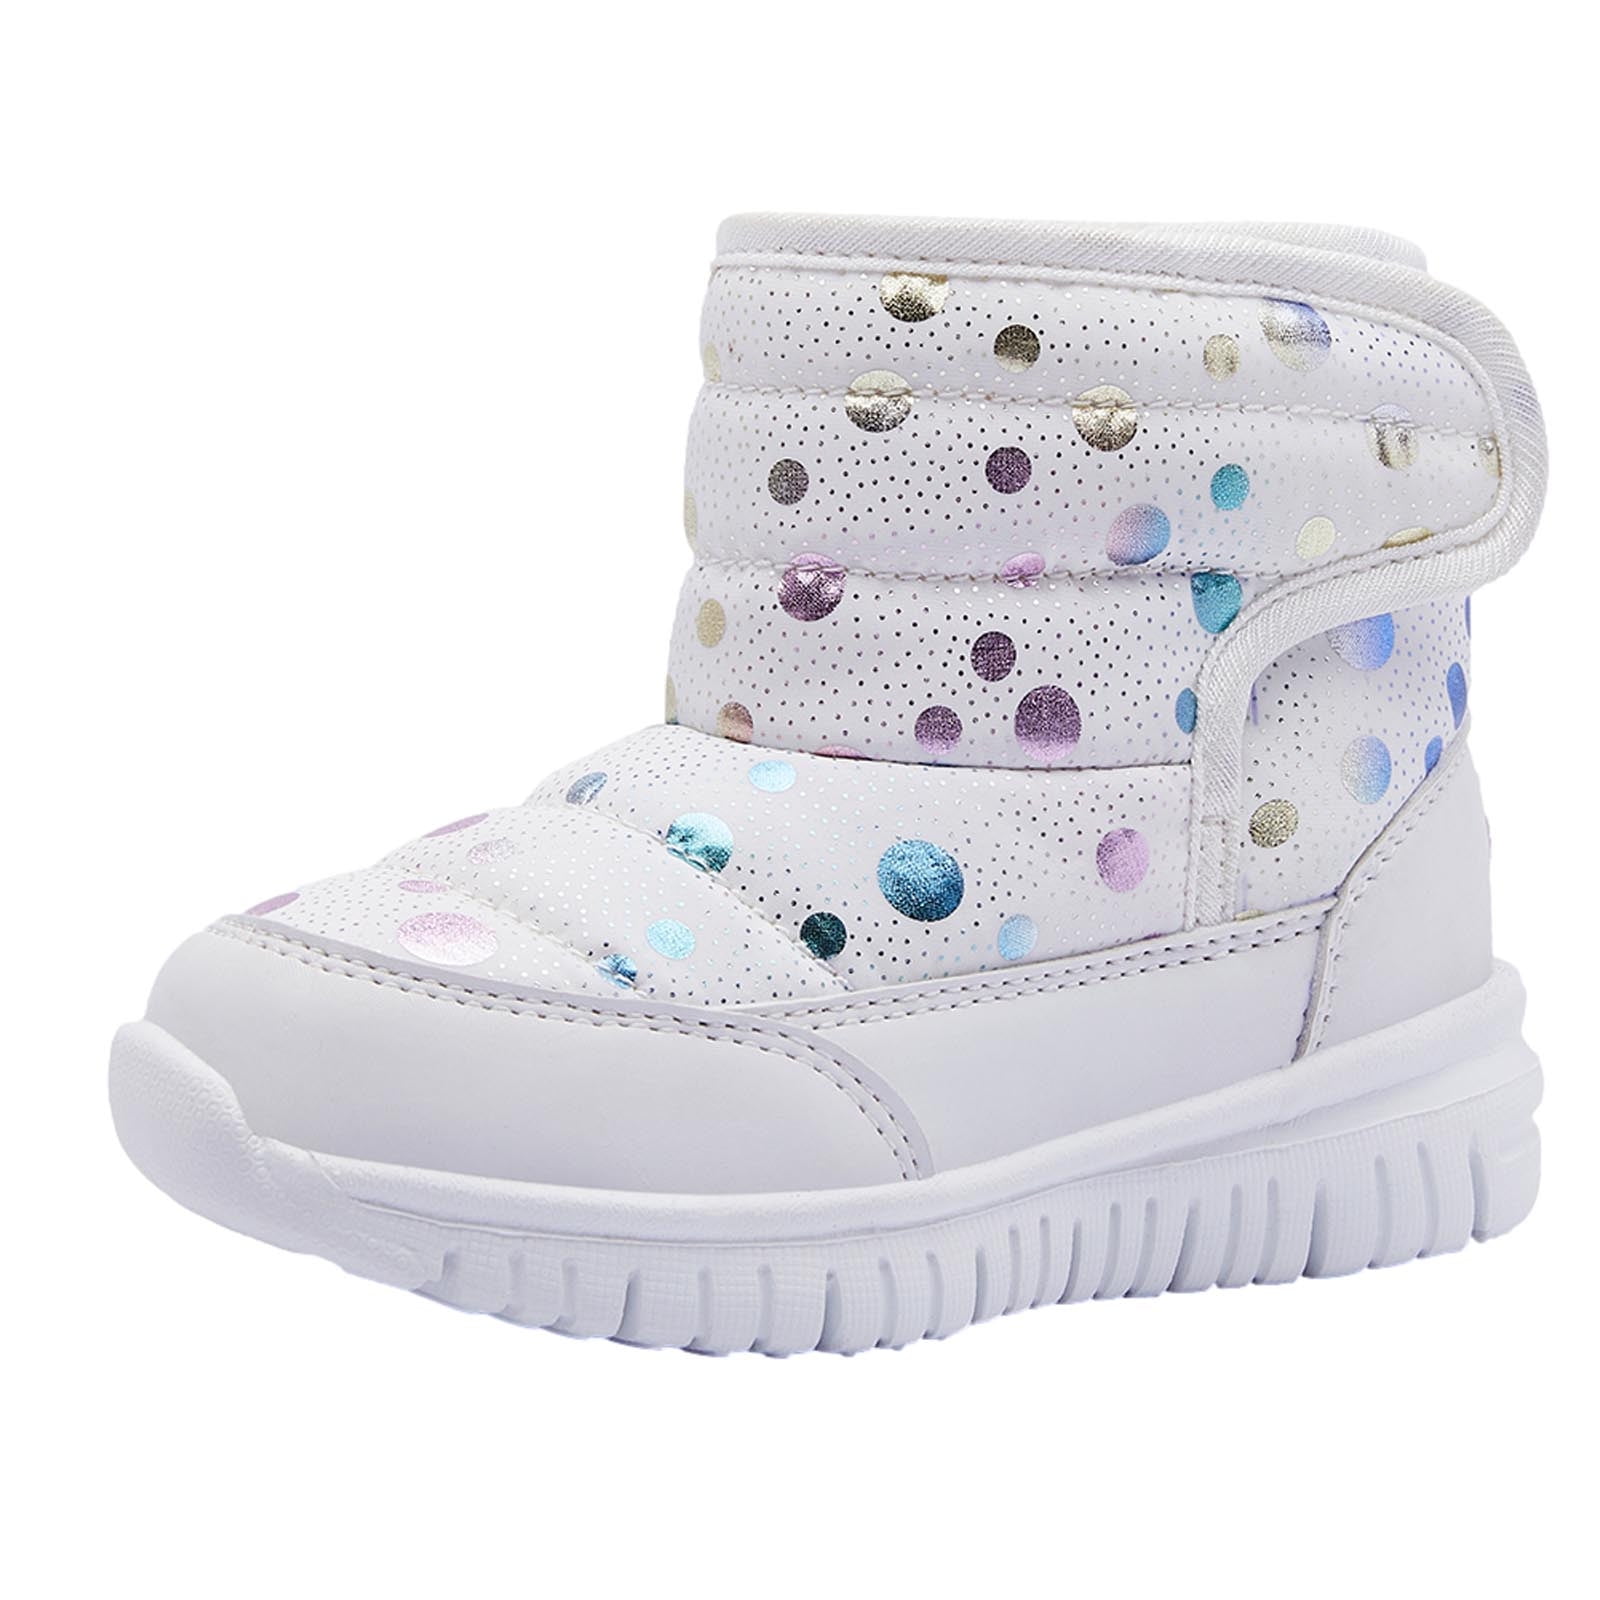  Toddler Kids Led Shoes Winter Luminous Cotton Light Boots Snow  Shoes Girls Boys Snowproof Fleece (Beige, 6 Infant)